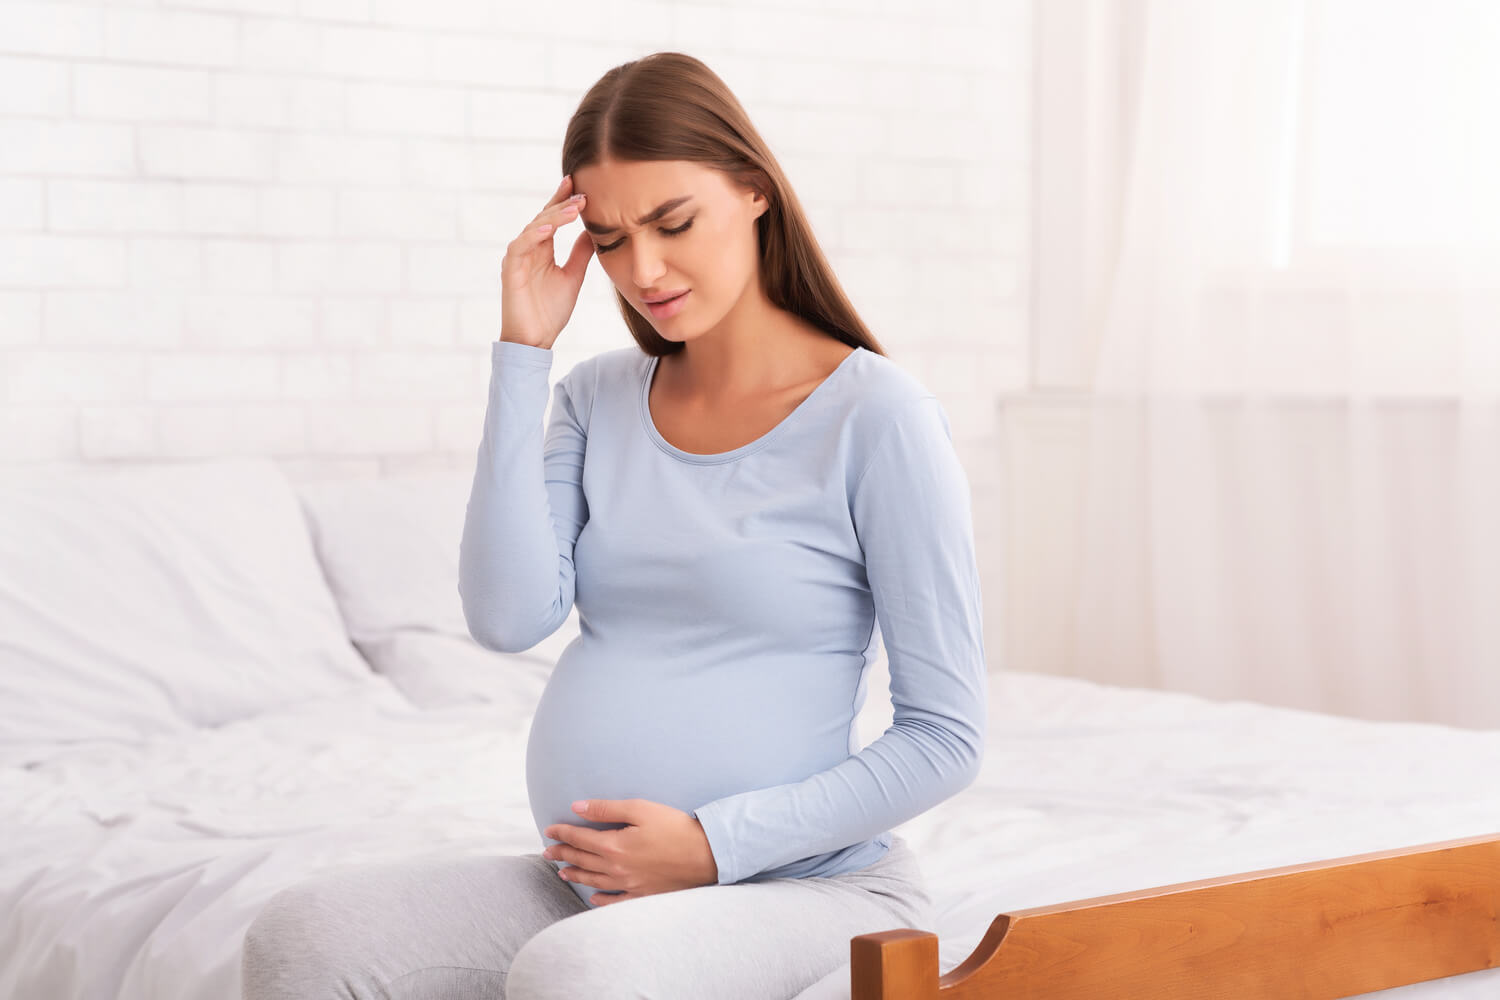 Chóng mặt khi mang thai là hiện tượng thường gặp